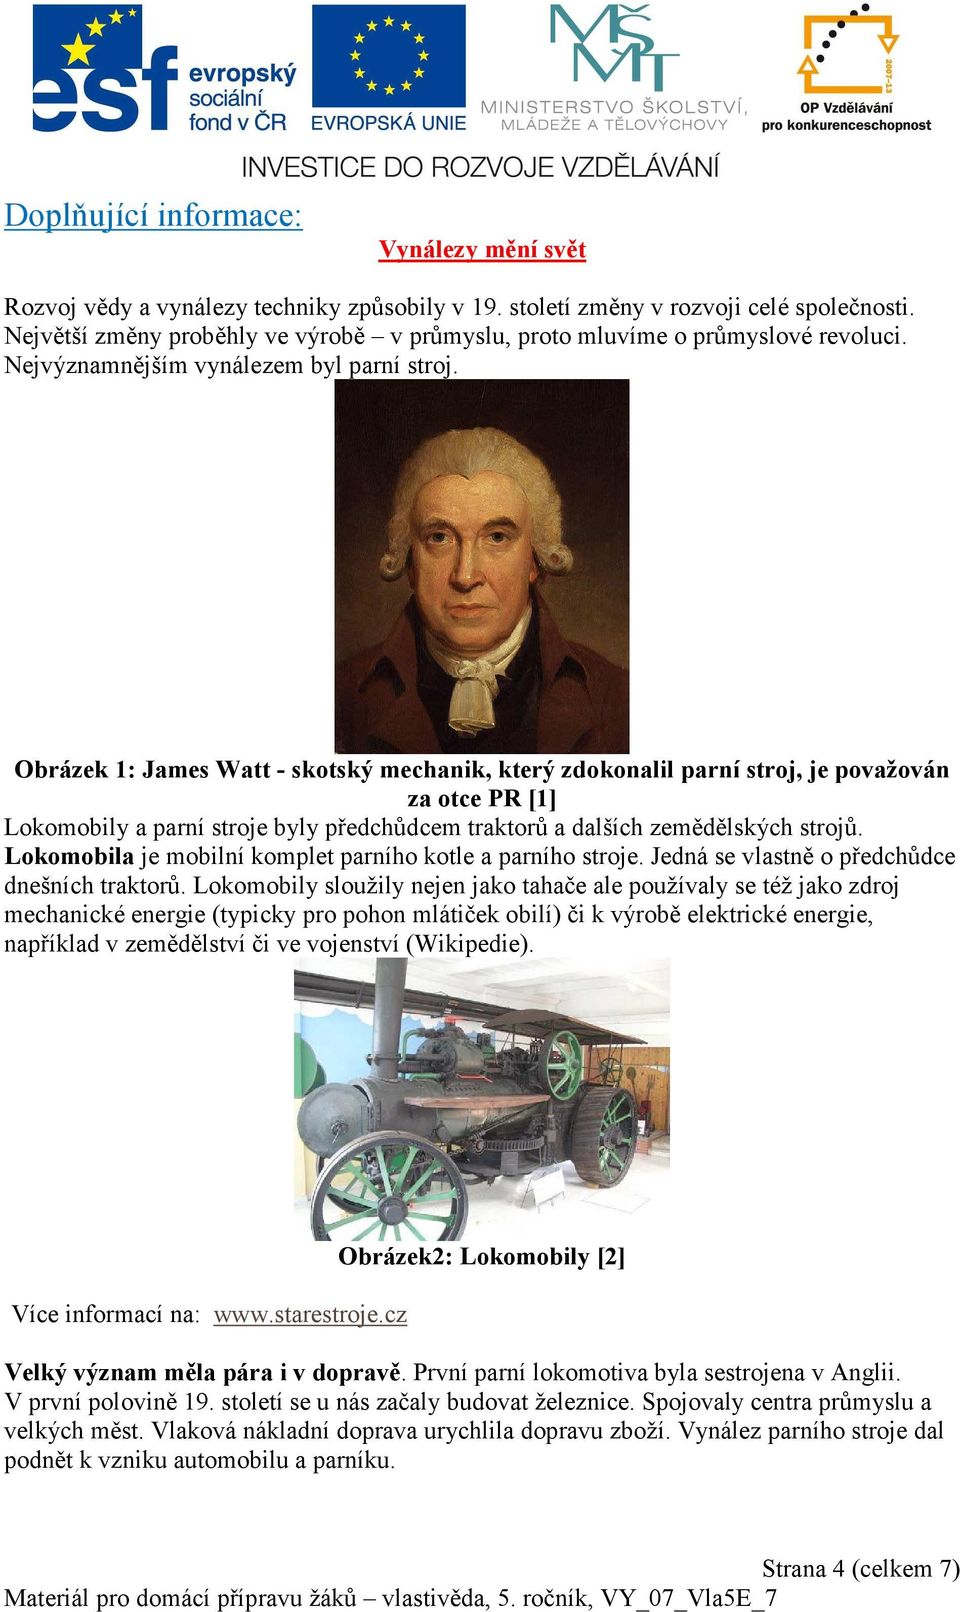 Obrázek 1: James Watt - skotský mechanik, který zdokonalil parní stroj, je považován za otce PR [1] Lokomobily a parní stroje byly předchůdcem traktorů a dalších zemědělských strojů.